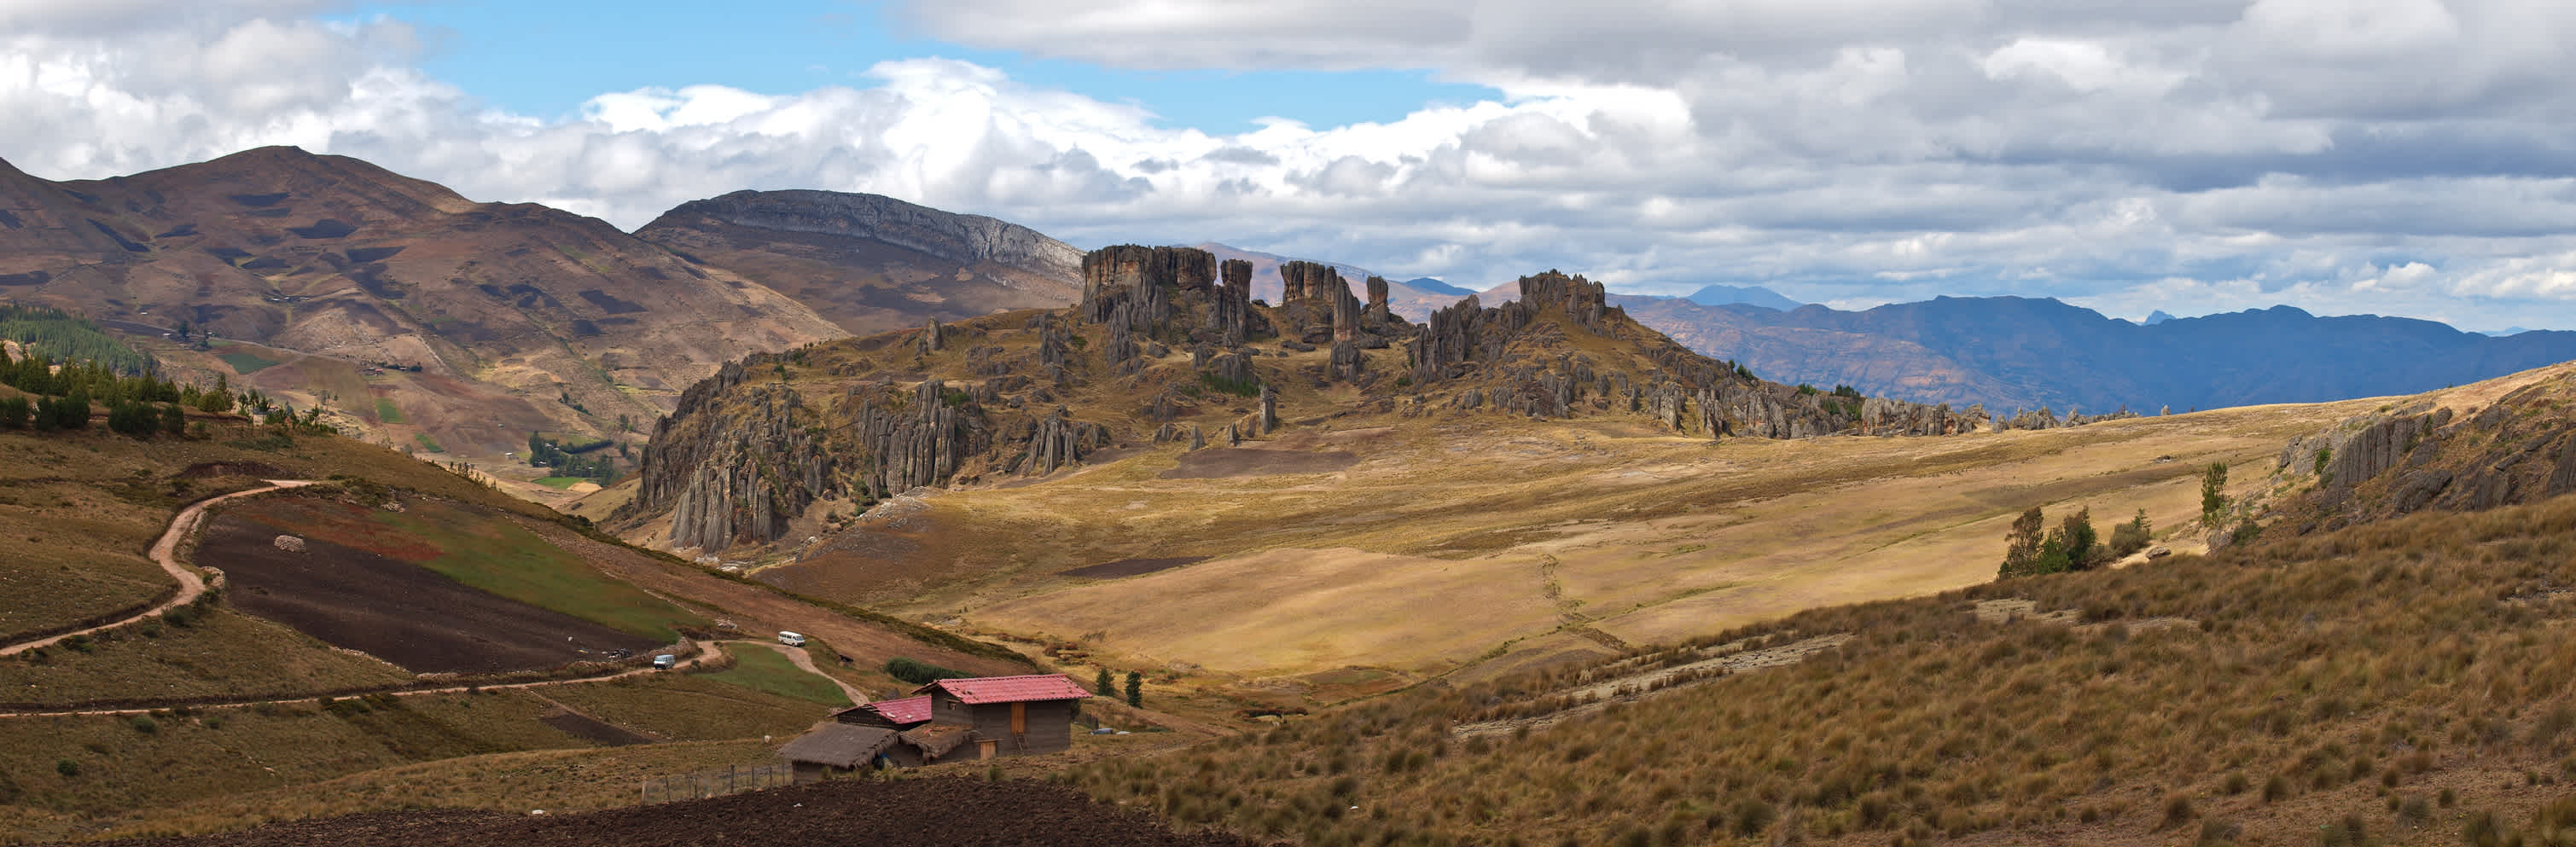 Cacamarca Peru, Cumbe Mayo Aquädukte - Ruinen aus der Zeit vor den Inkas